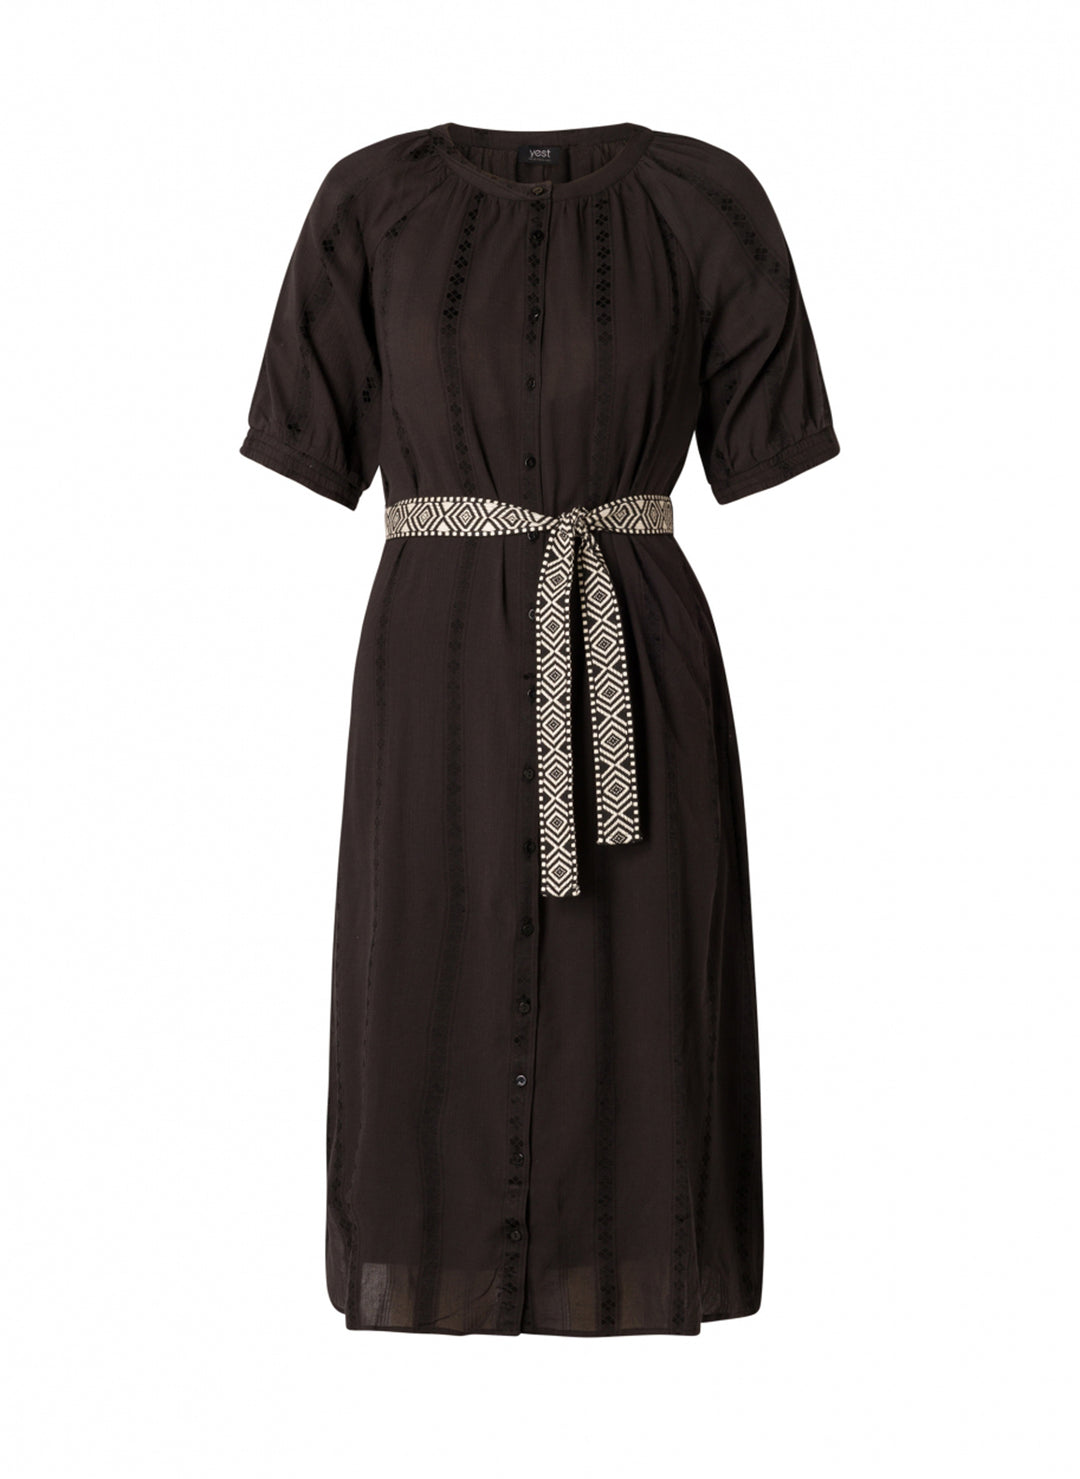 zwarte katoenen jurk - yesta - - grote maten - dameskleding - kledingwinkel - herent - leuven